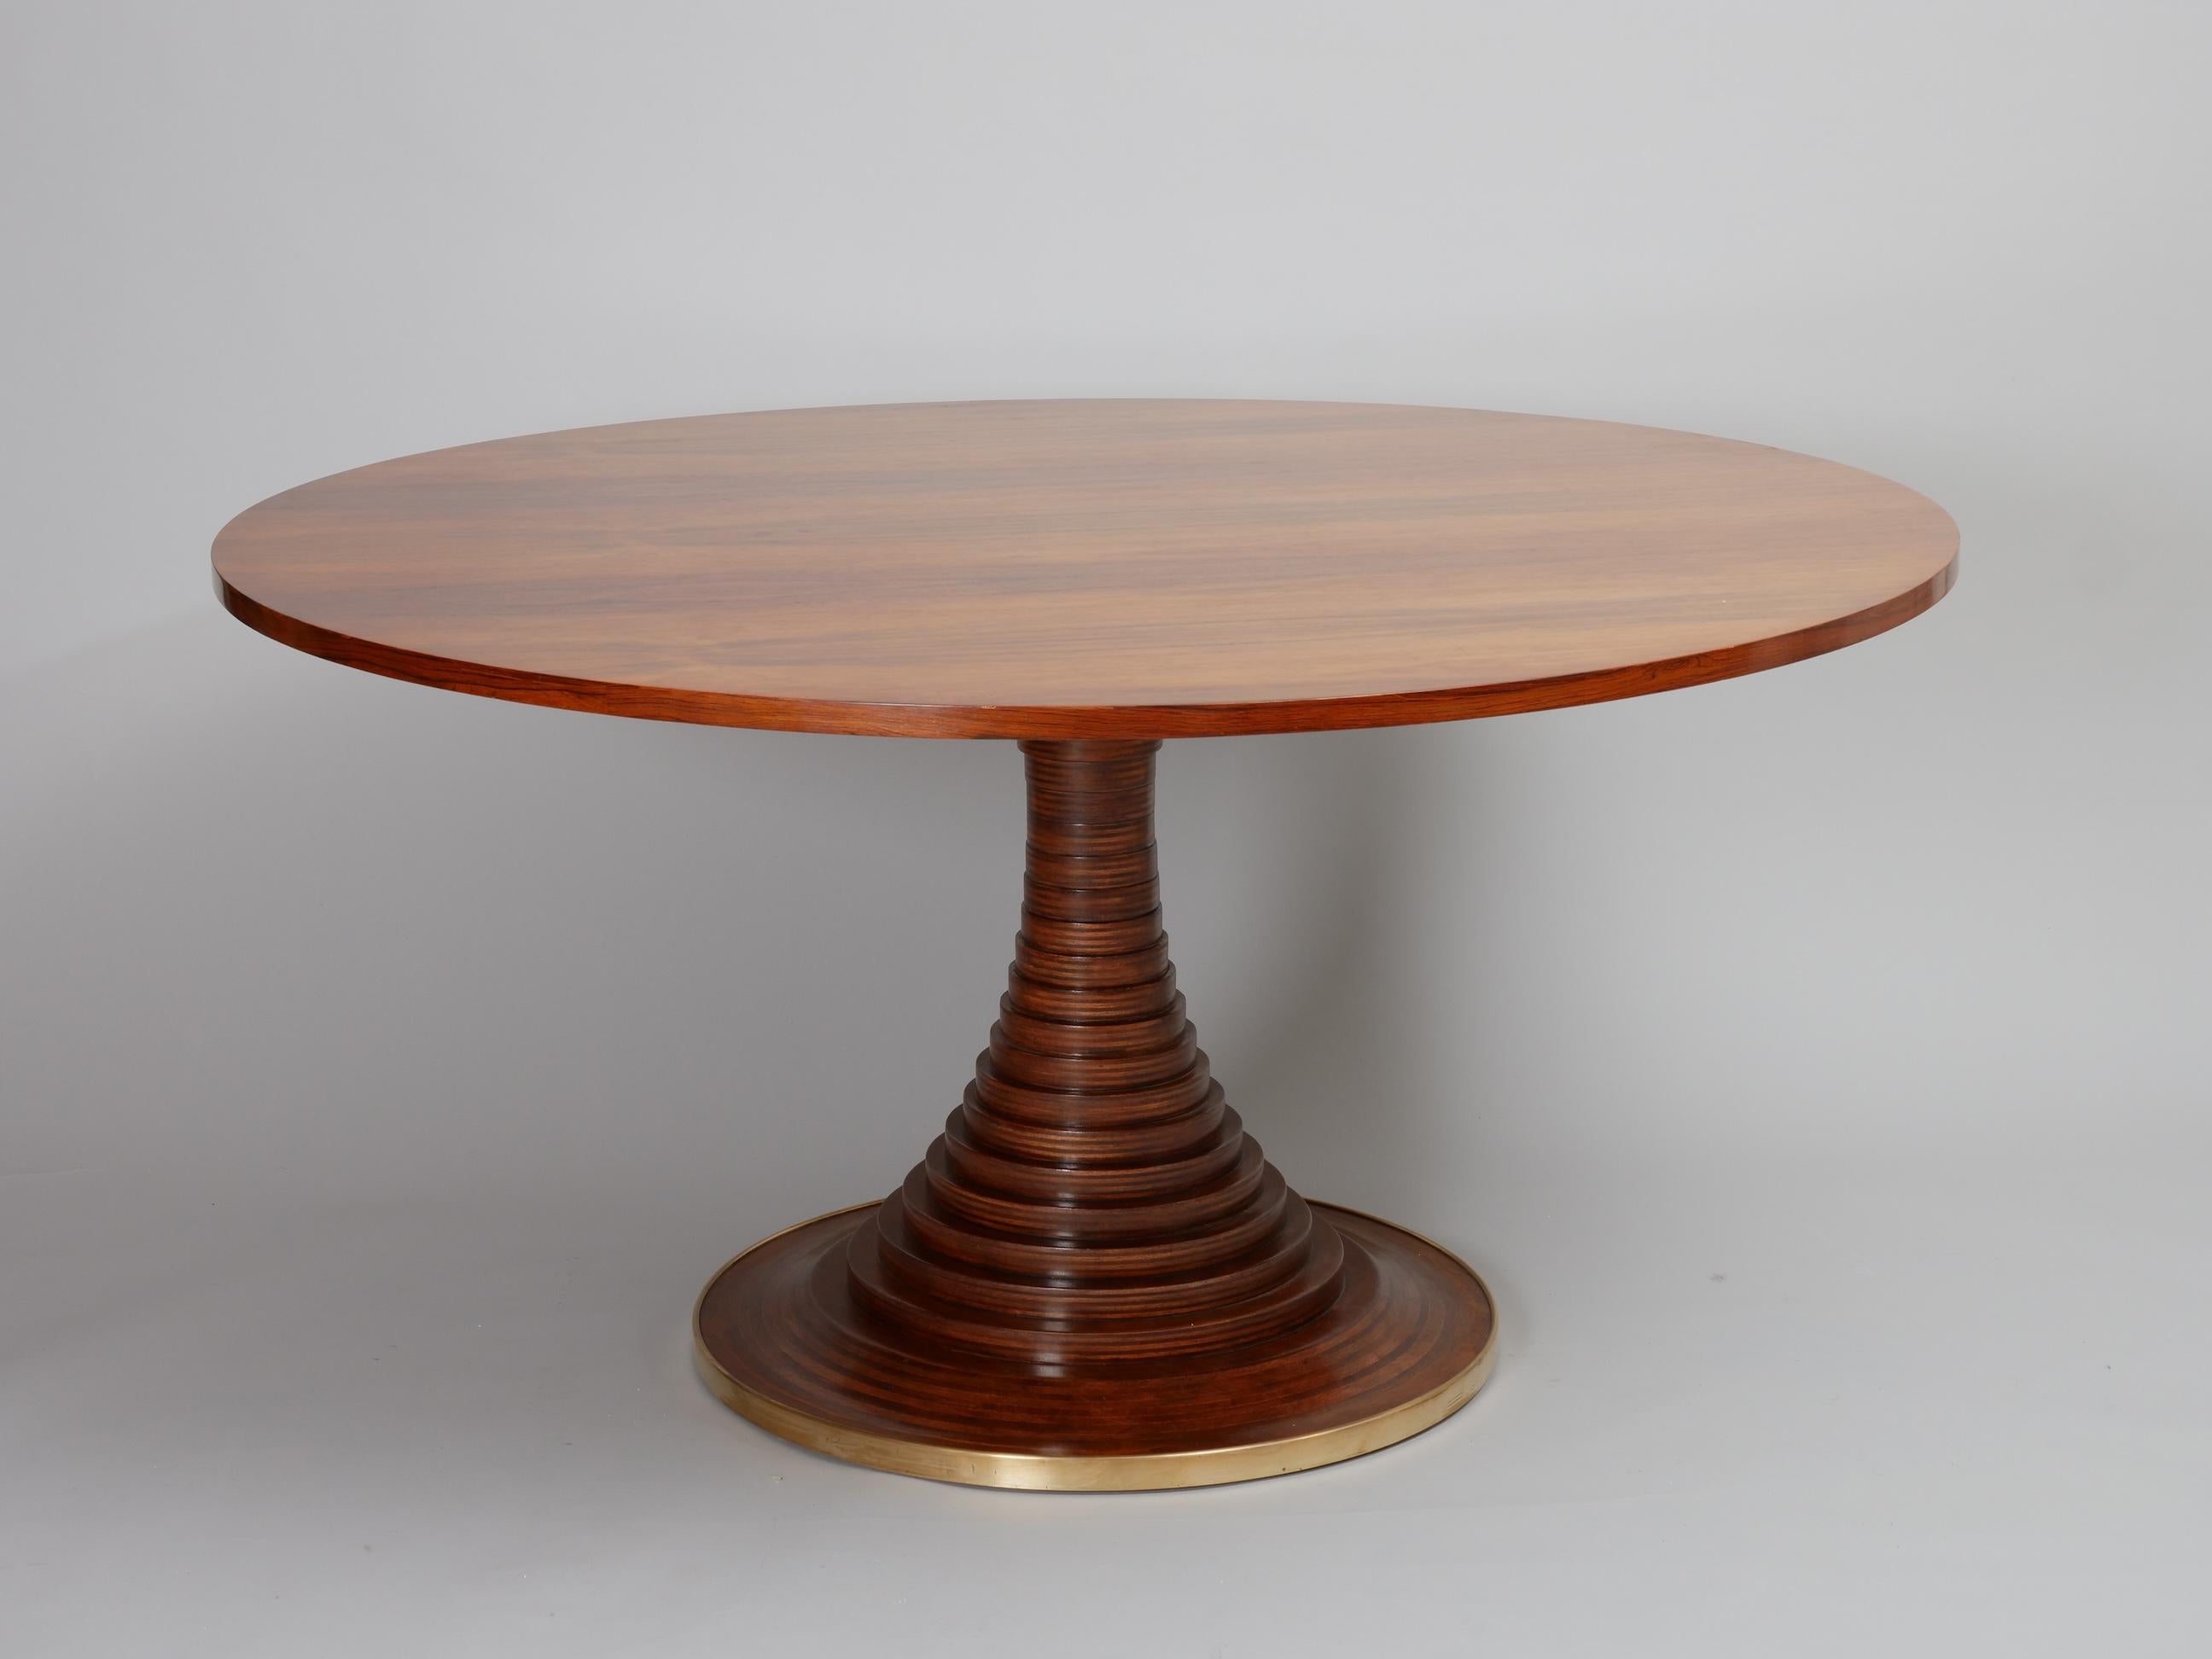 Schöner Mittel- oder Esstisch, entworfen von Carlo de Carli um 1964 und hergestellt von Sormani

Das Holz wurde behutsam restauriert und hat eine schöne warme Patina. Das Messingband wurde poliert. 

Modell 180



